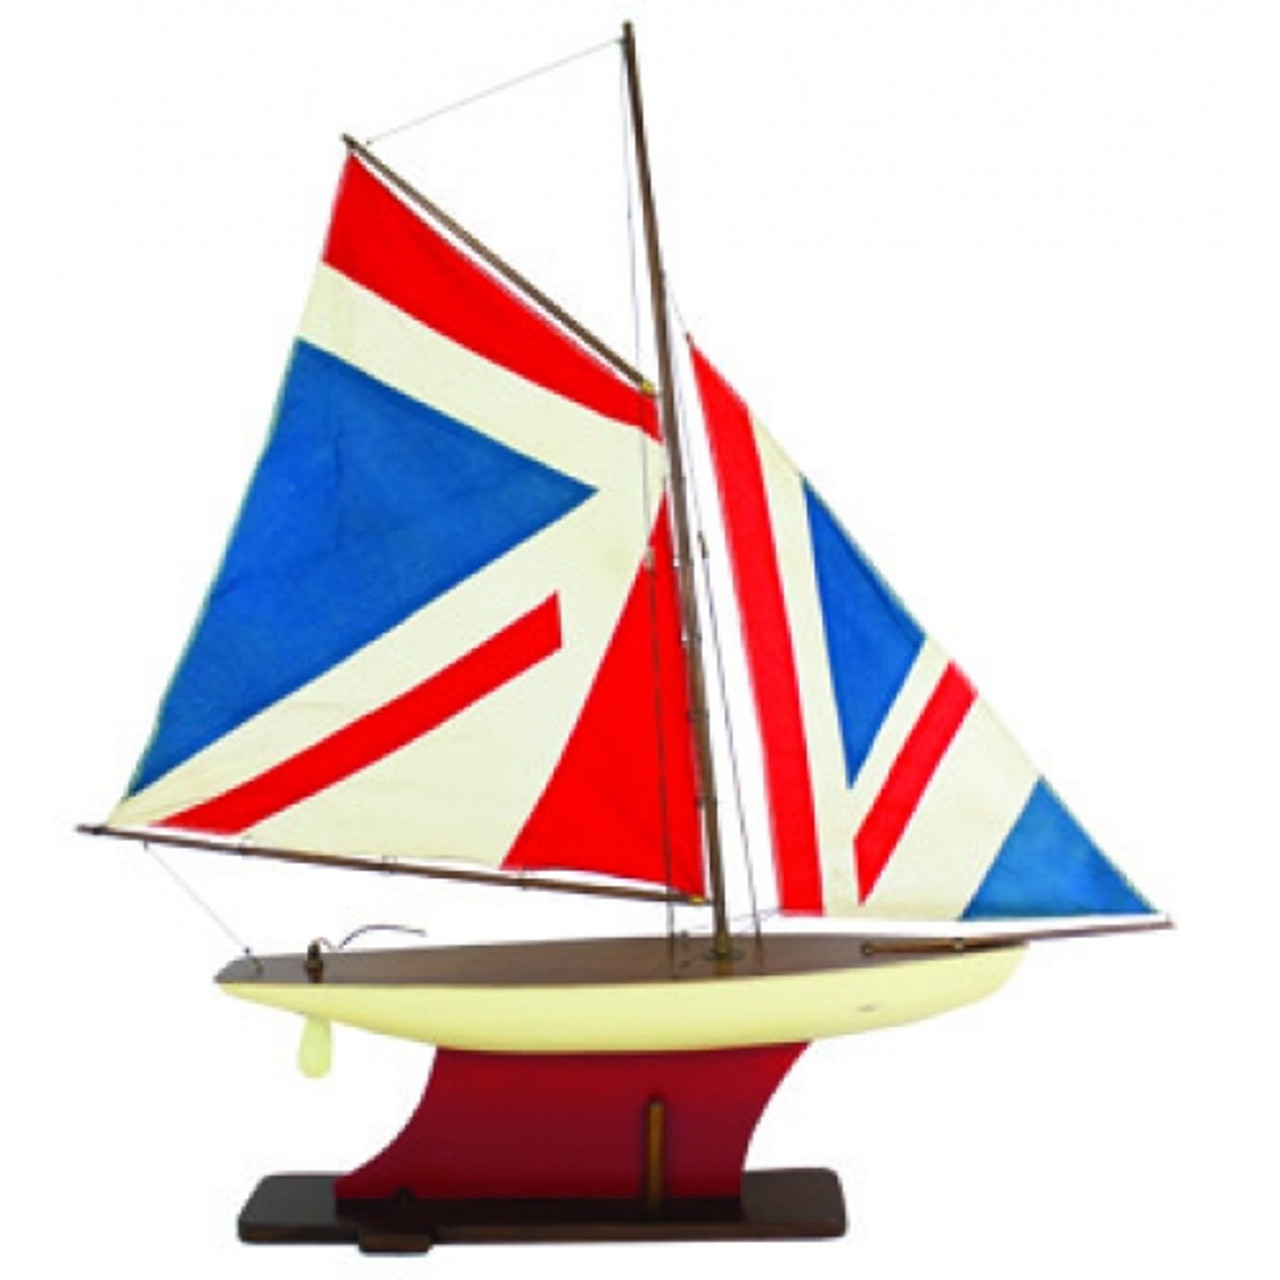 Pond Yacht "Union Flag"